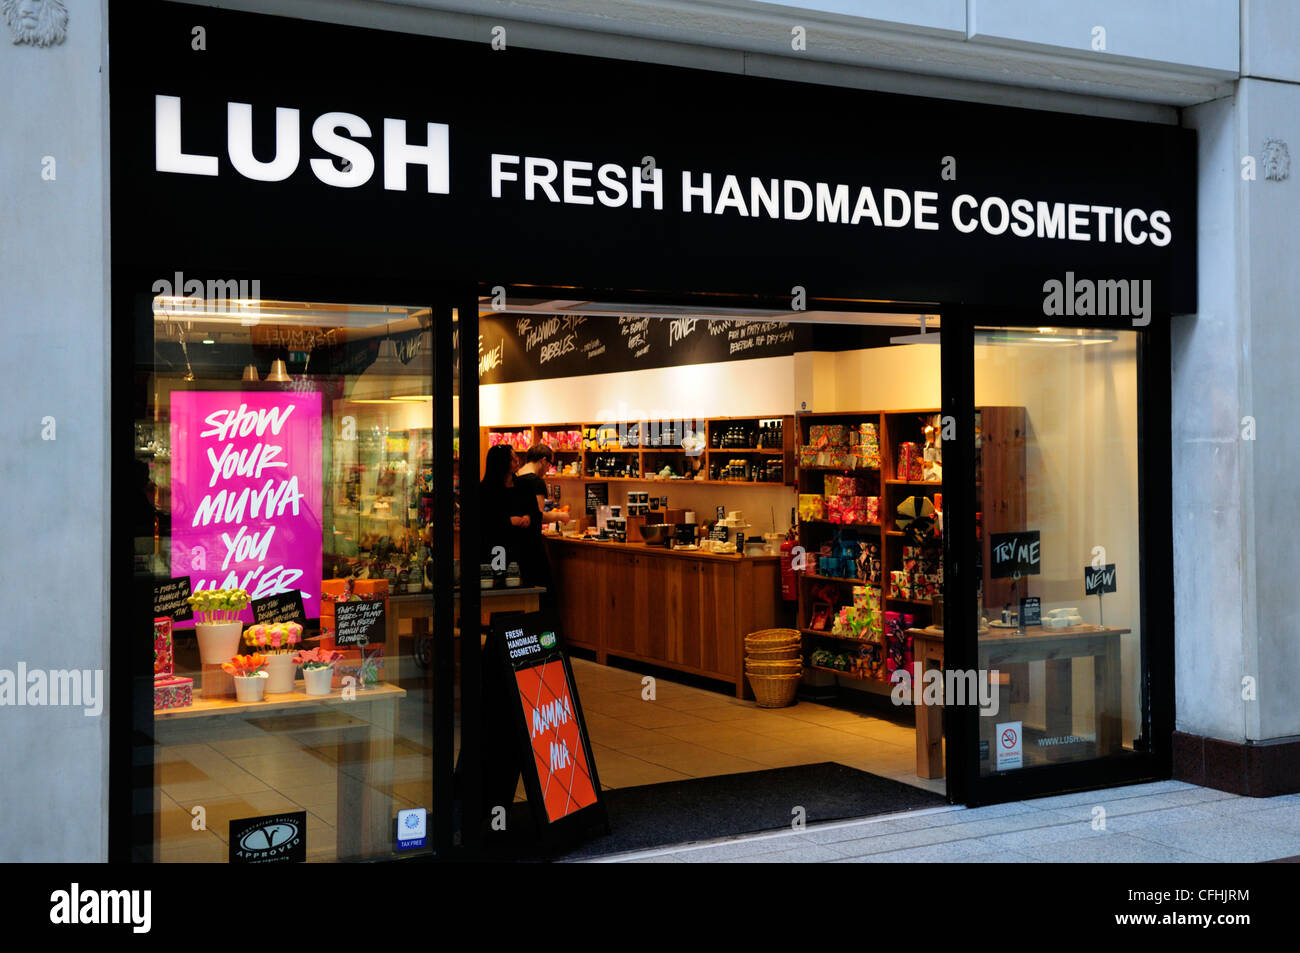 Lussureggiante fresche fatte a mano un negozio di cosmetici, Cambridge, Inghilterra, Regno Unito Foto Stock